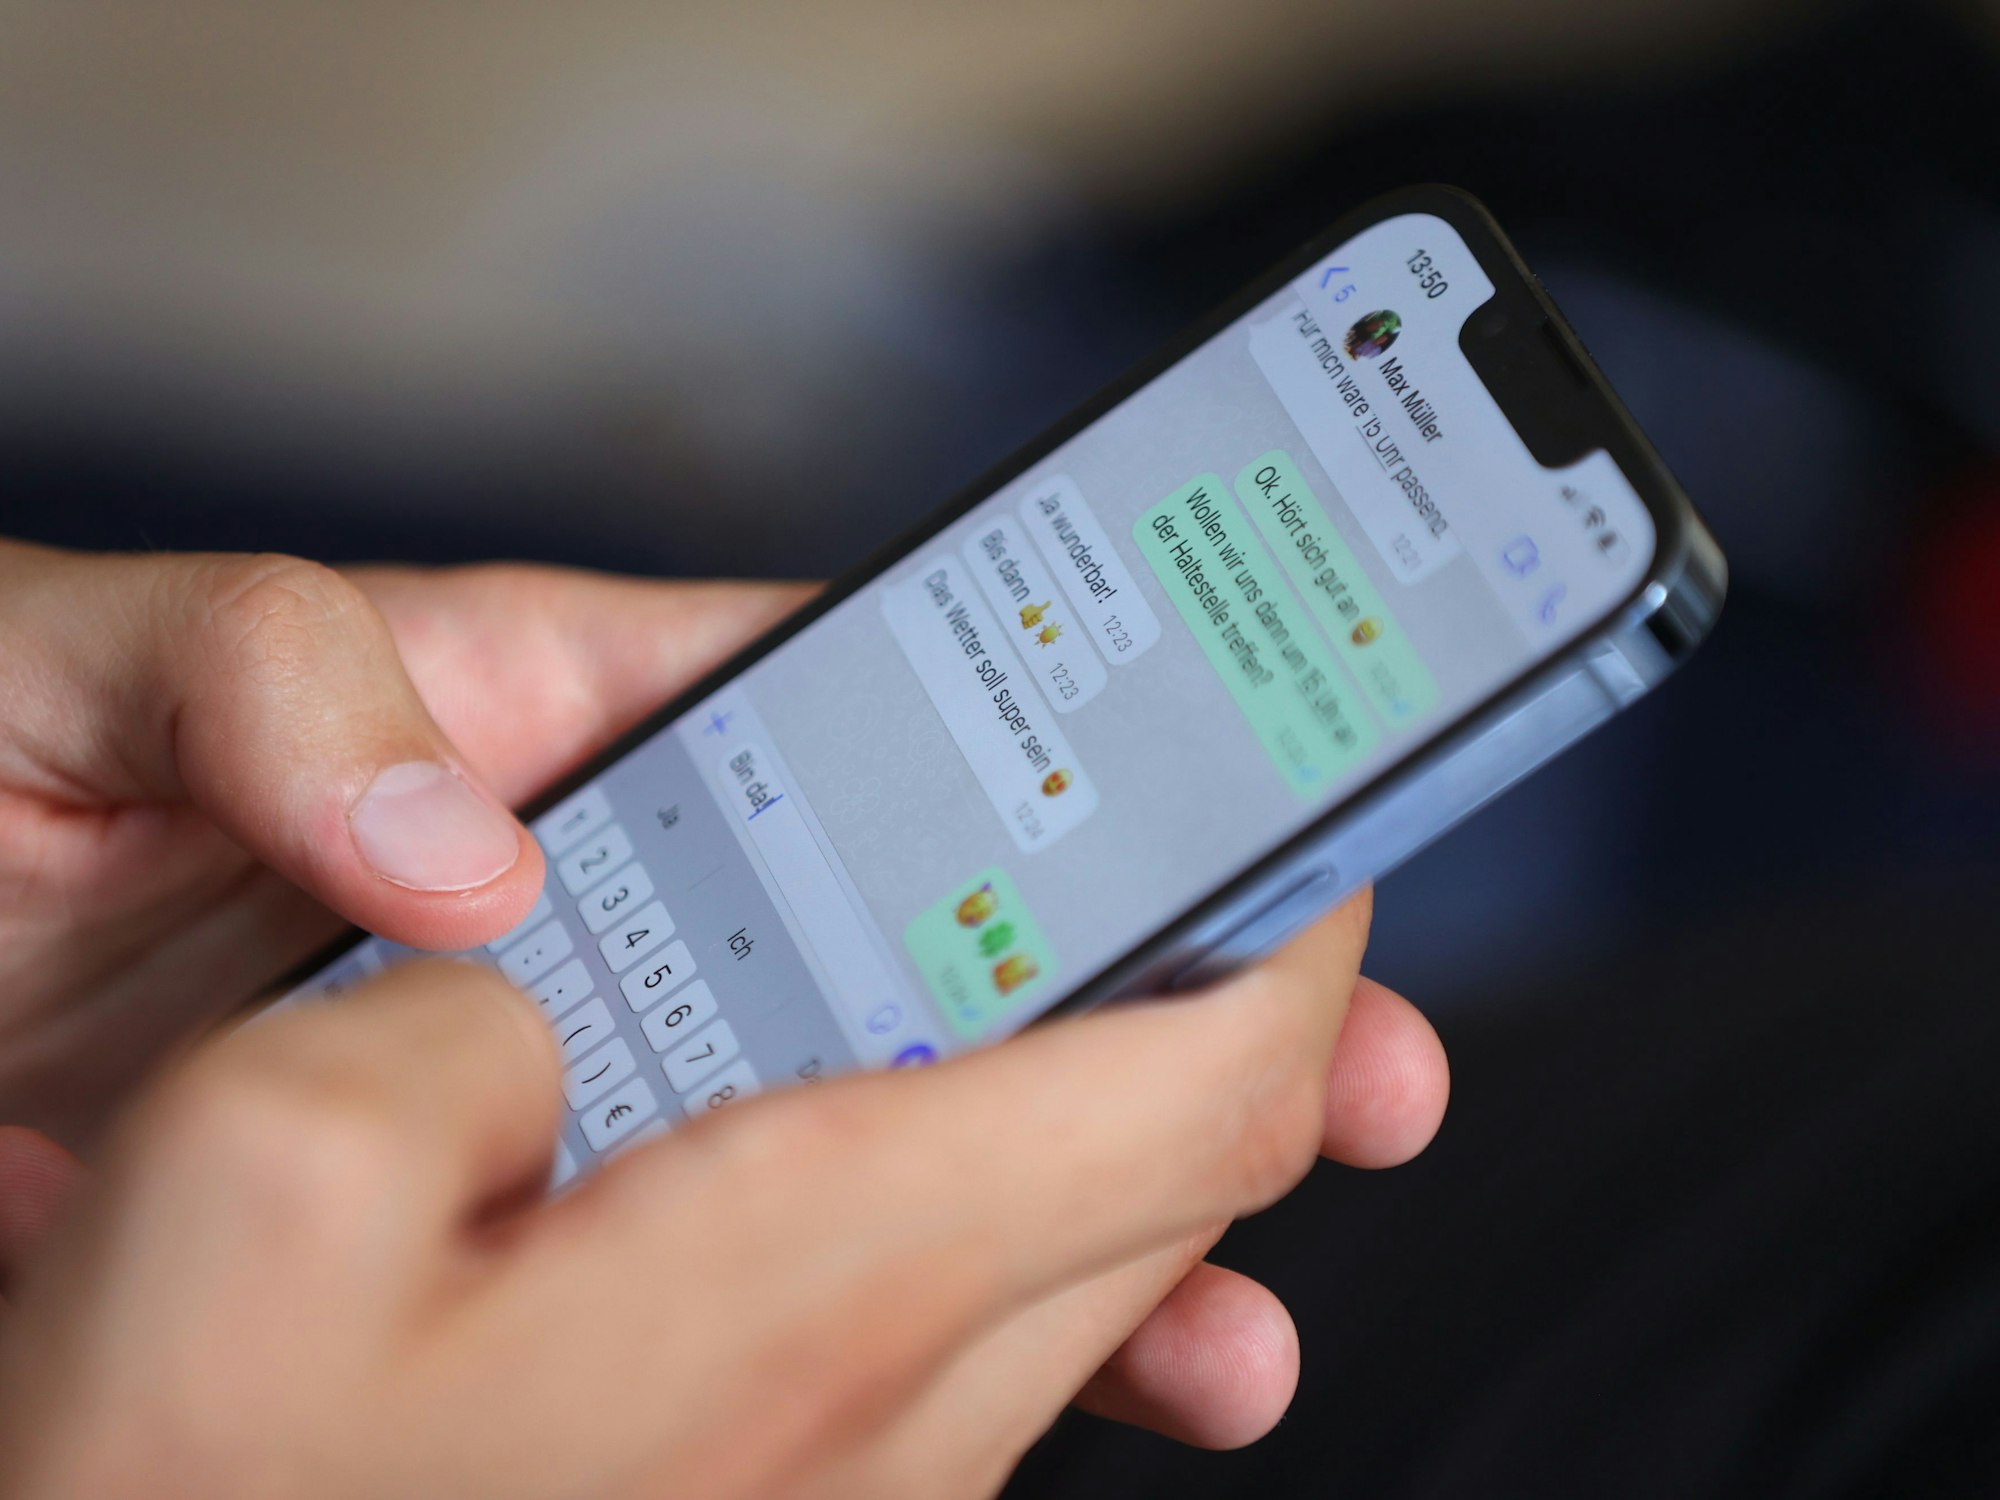 Ein junger Mann tippt auf einem Smartphone eine WhatsApp-Nachricht.